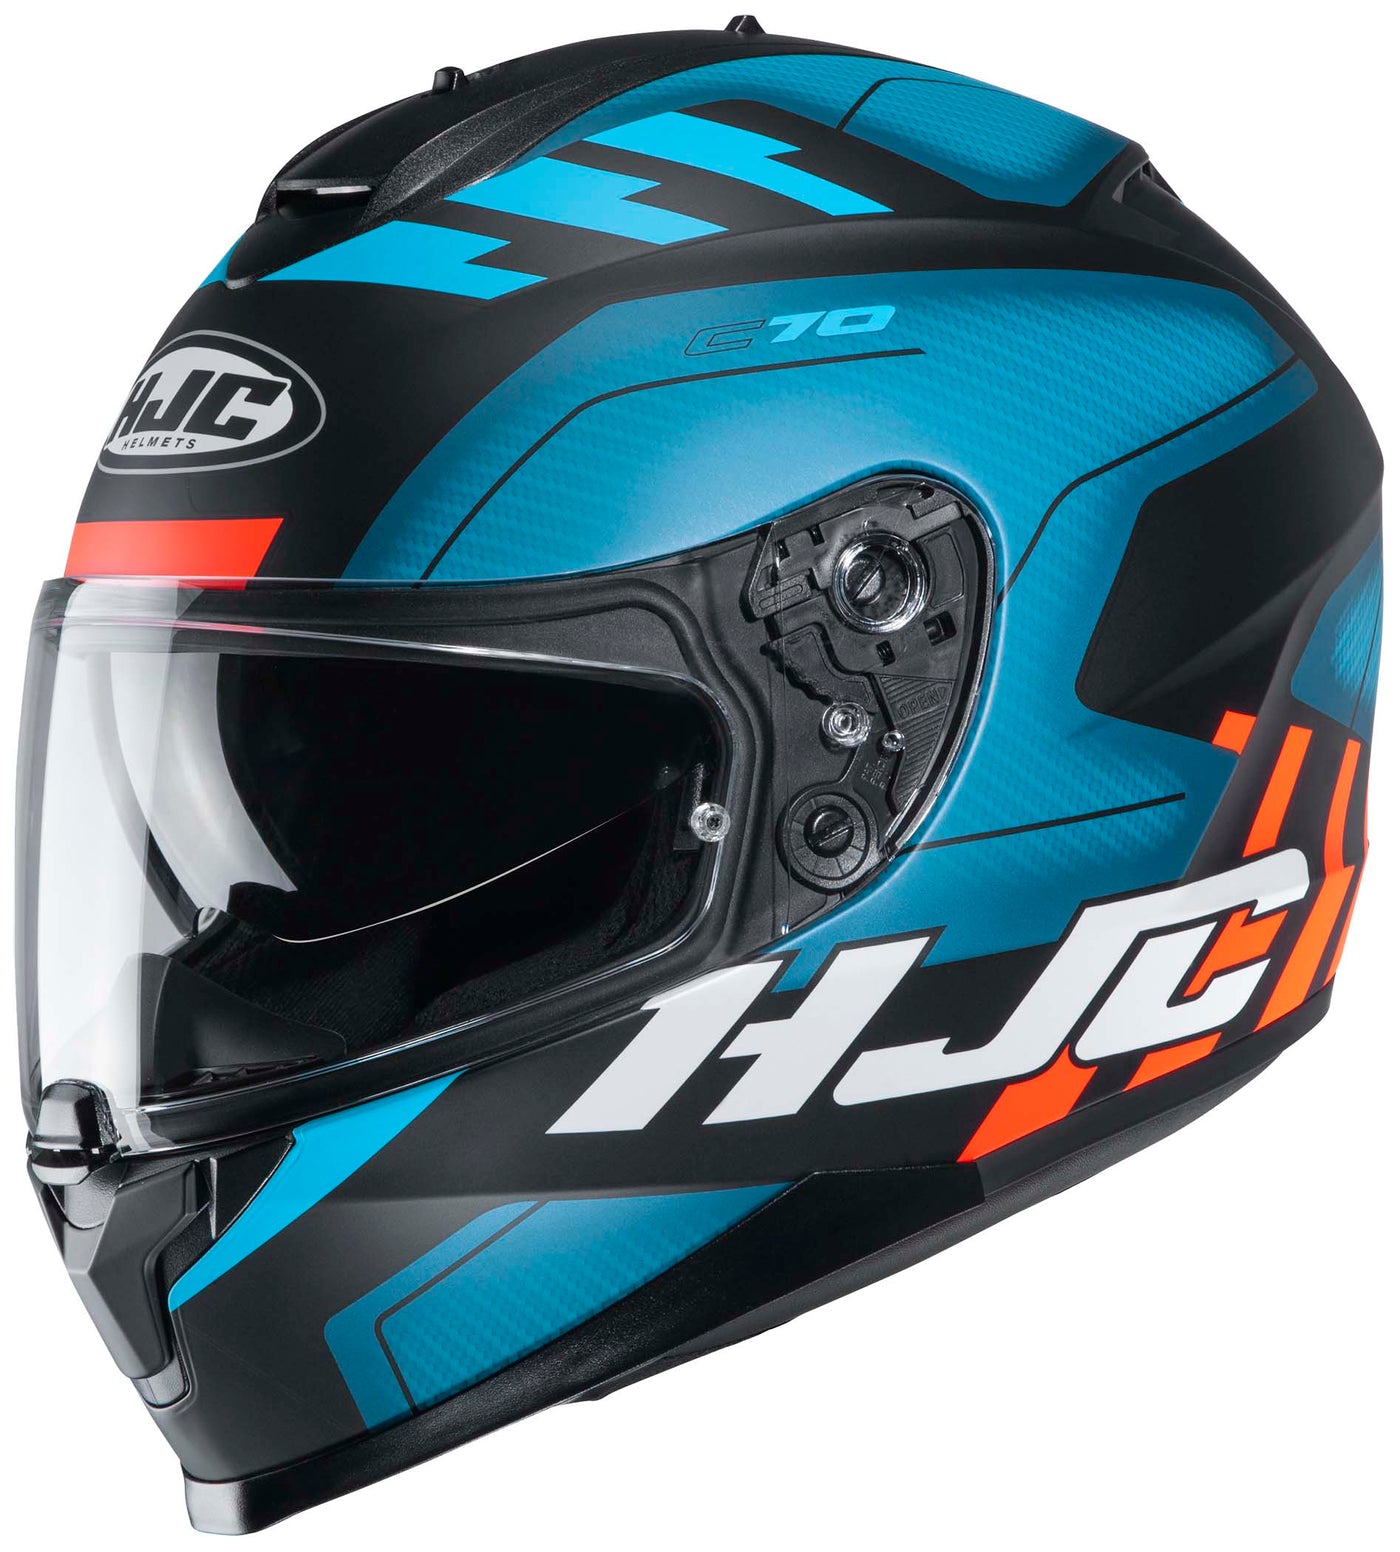 HJC C70 Koro Full Face Motorcycle Helmet